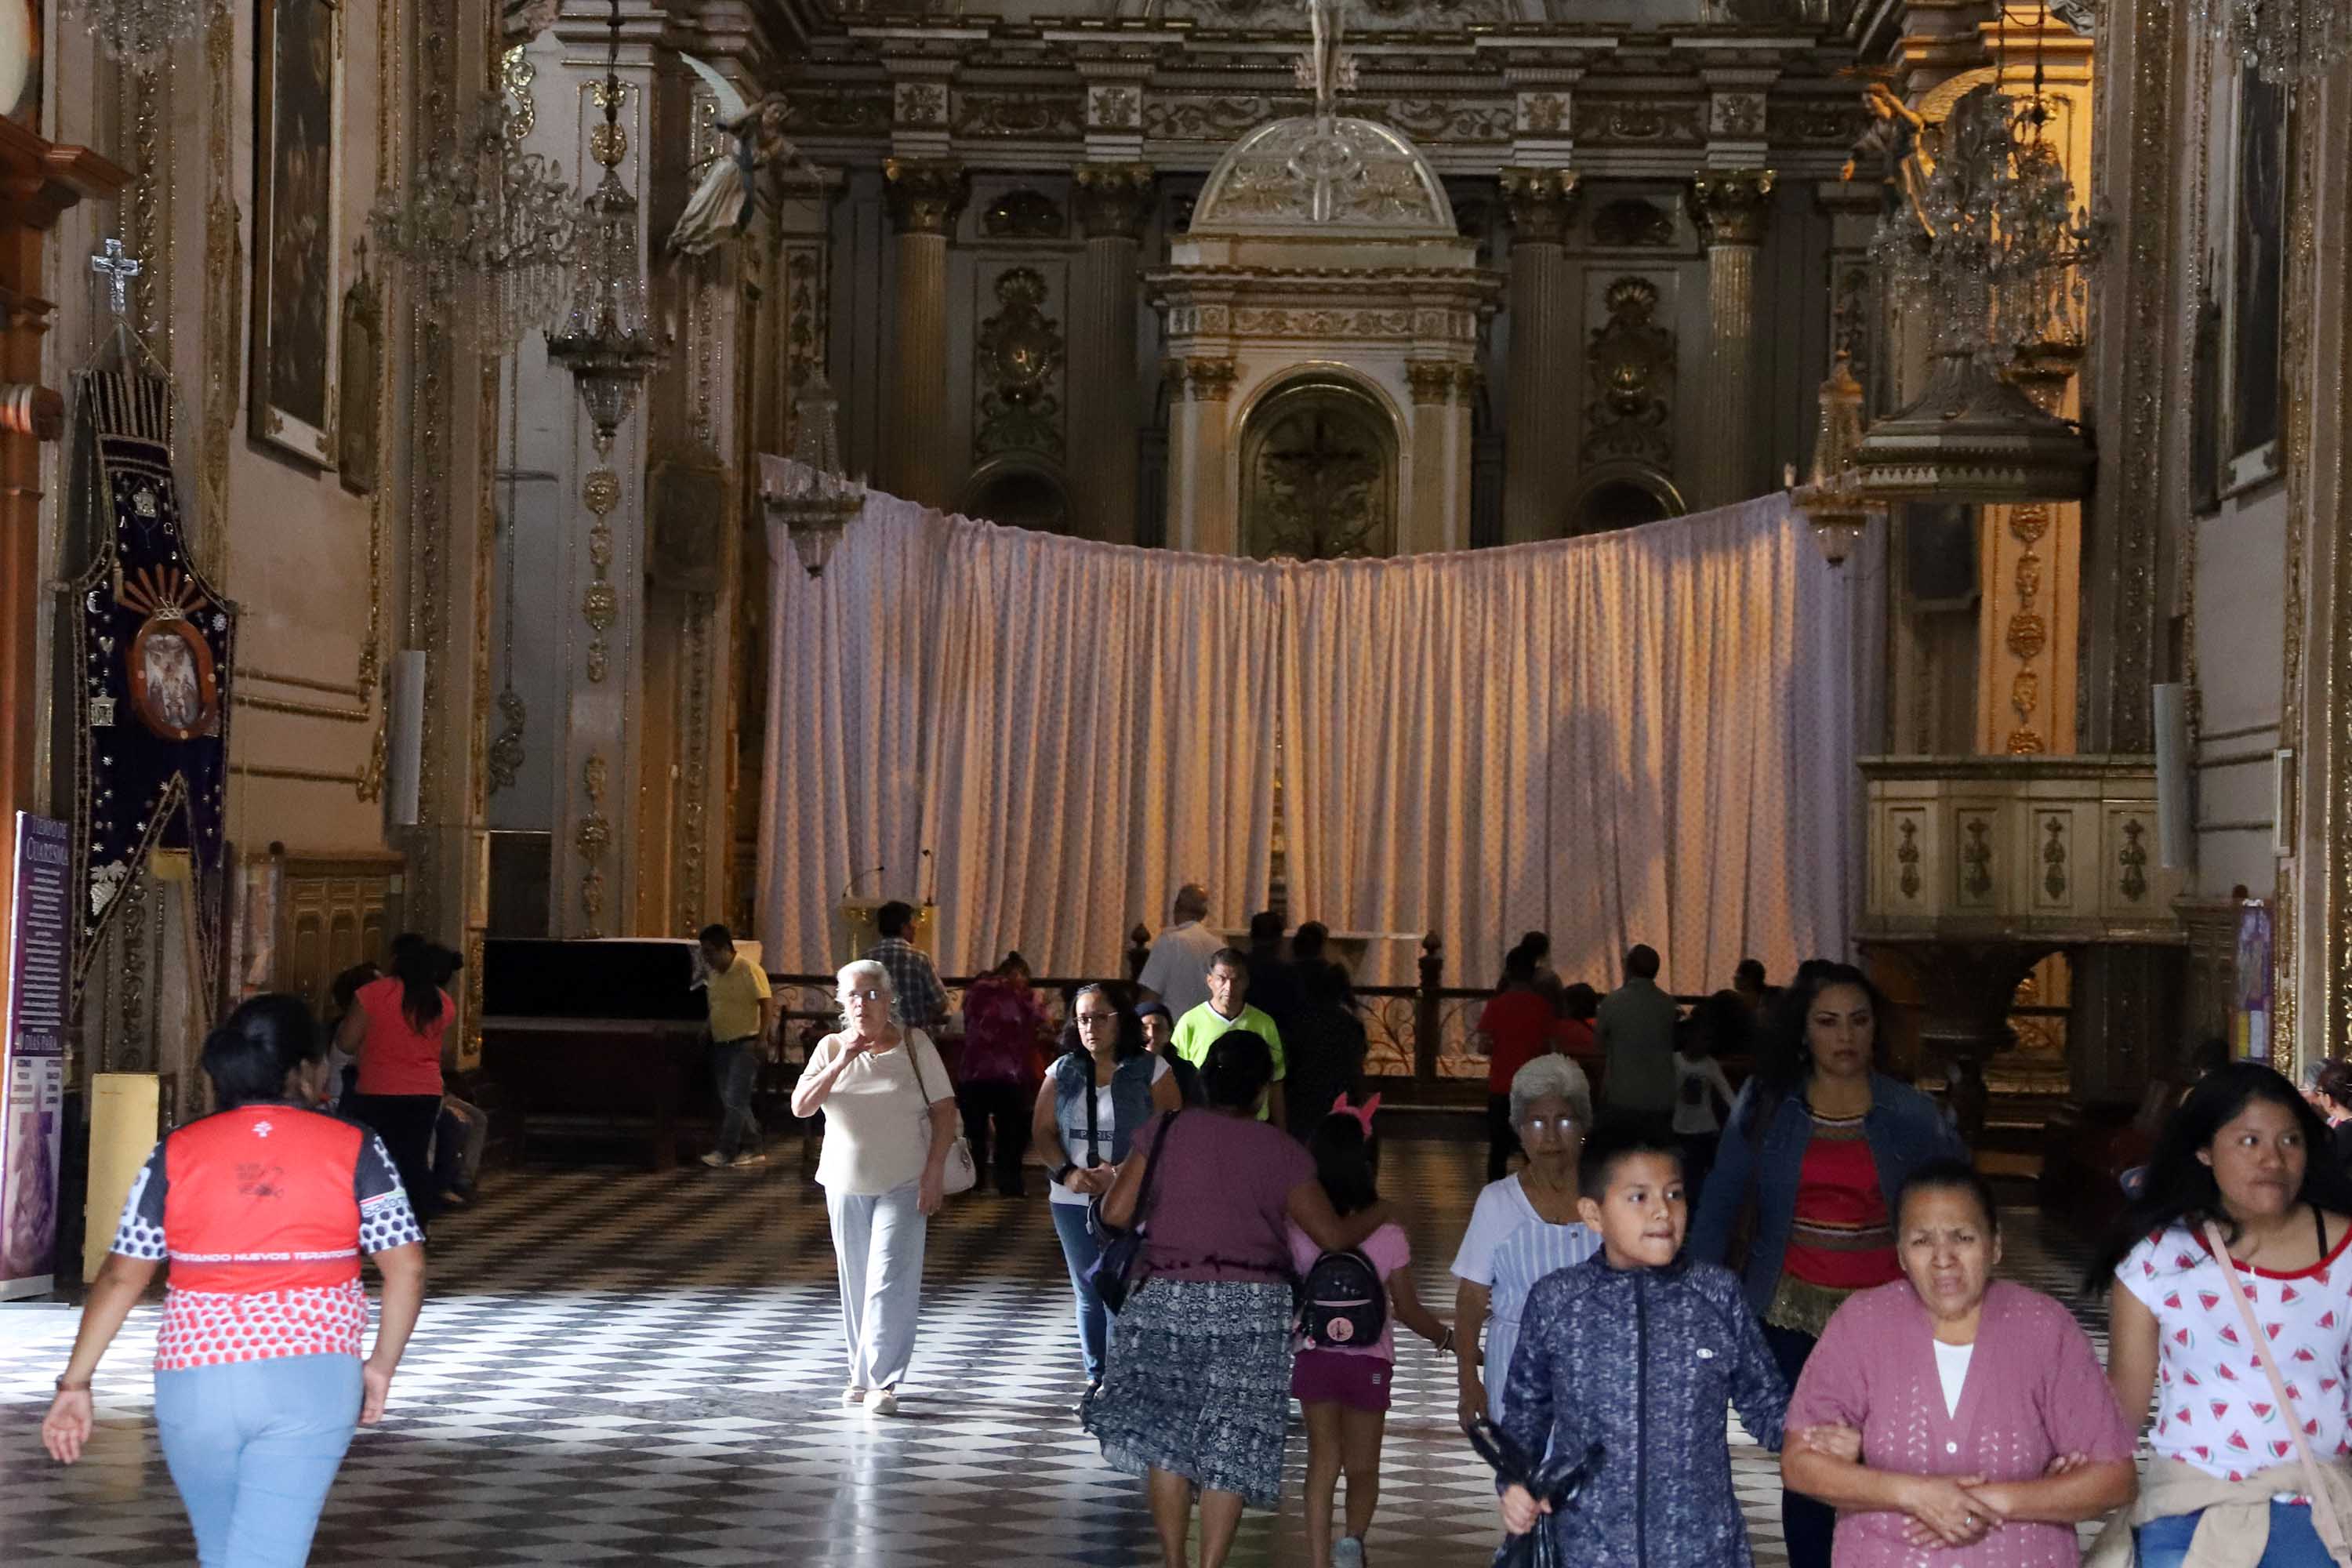 Se desborda la fe en la visita a las 7 Casas en Oaxaca